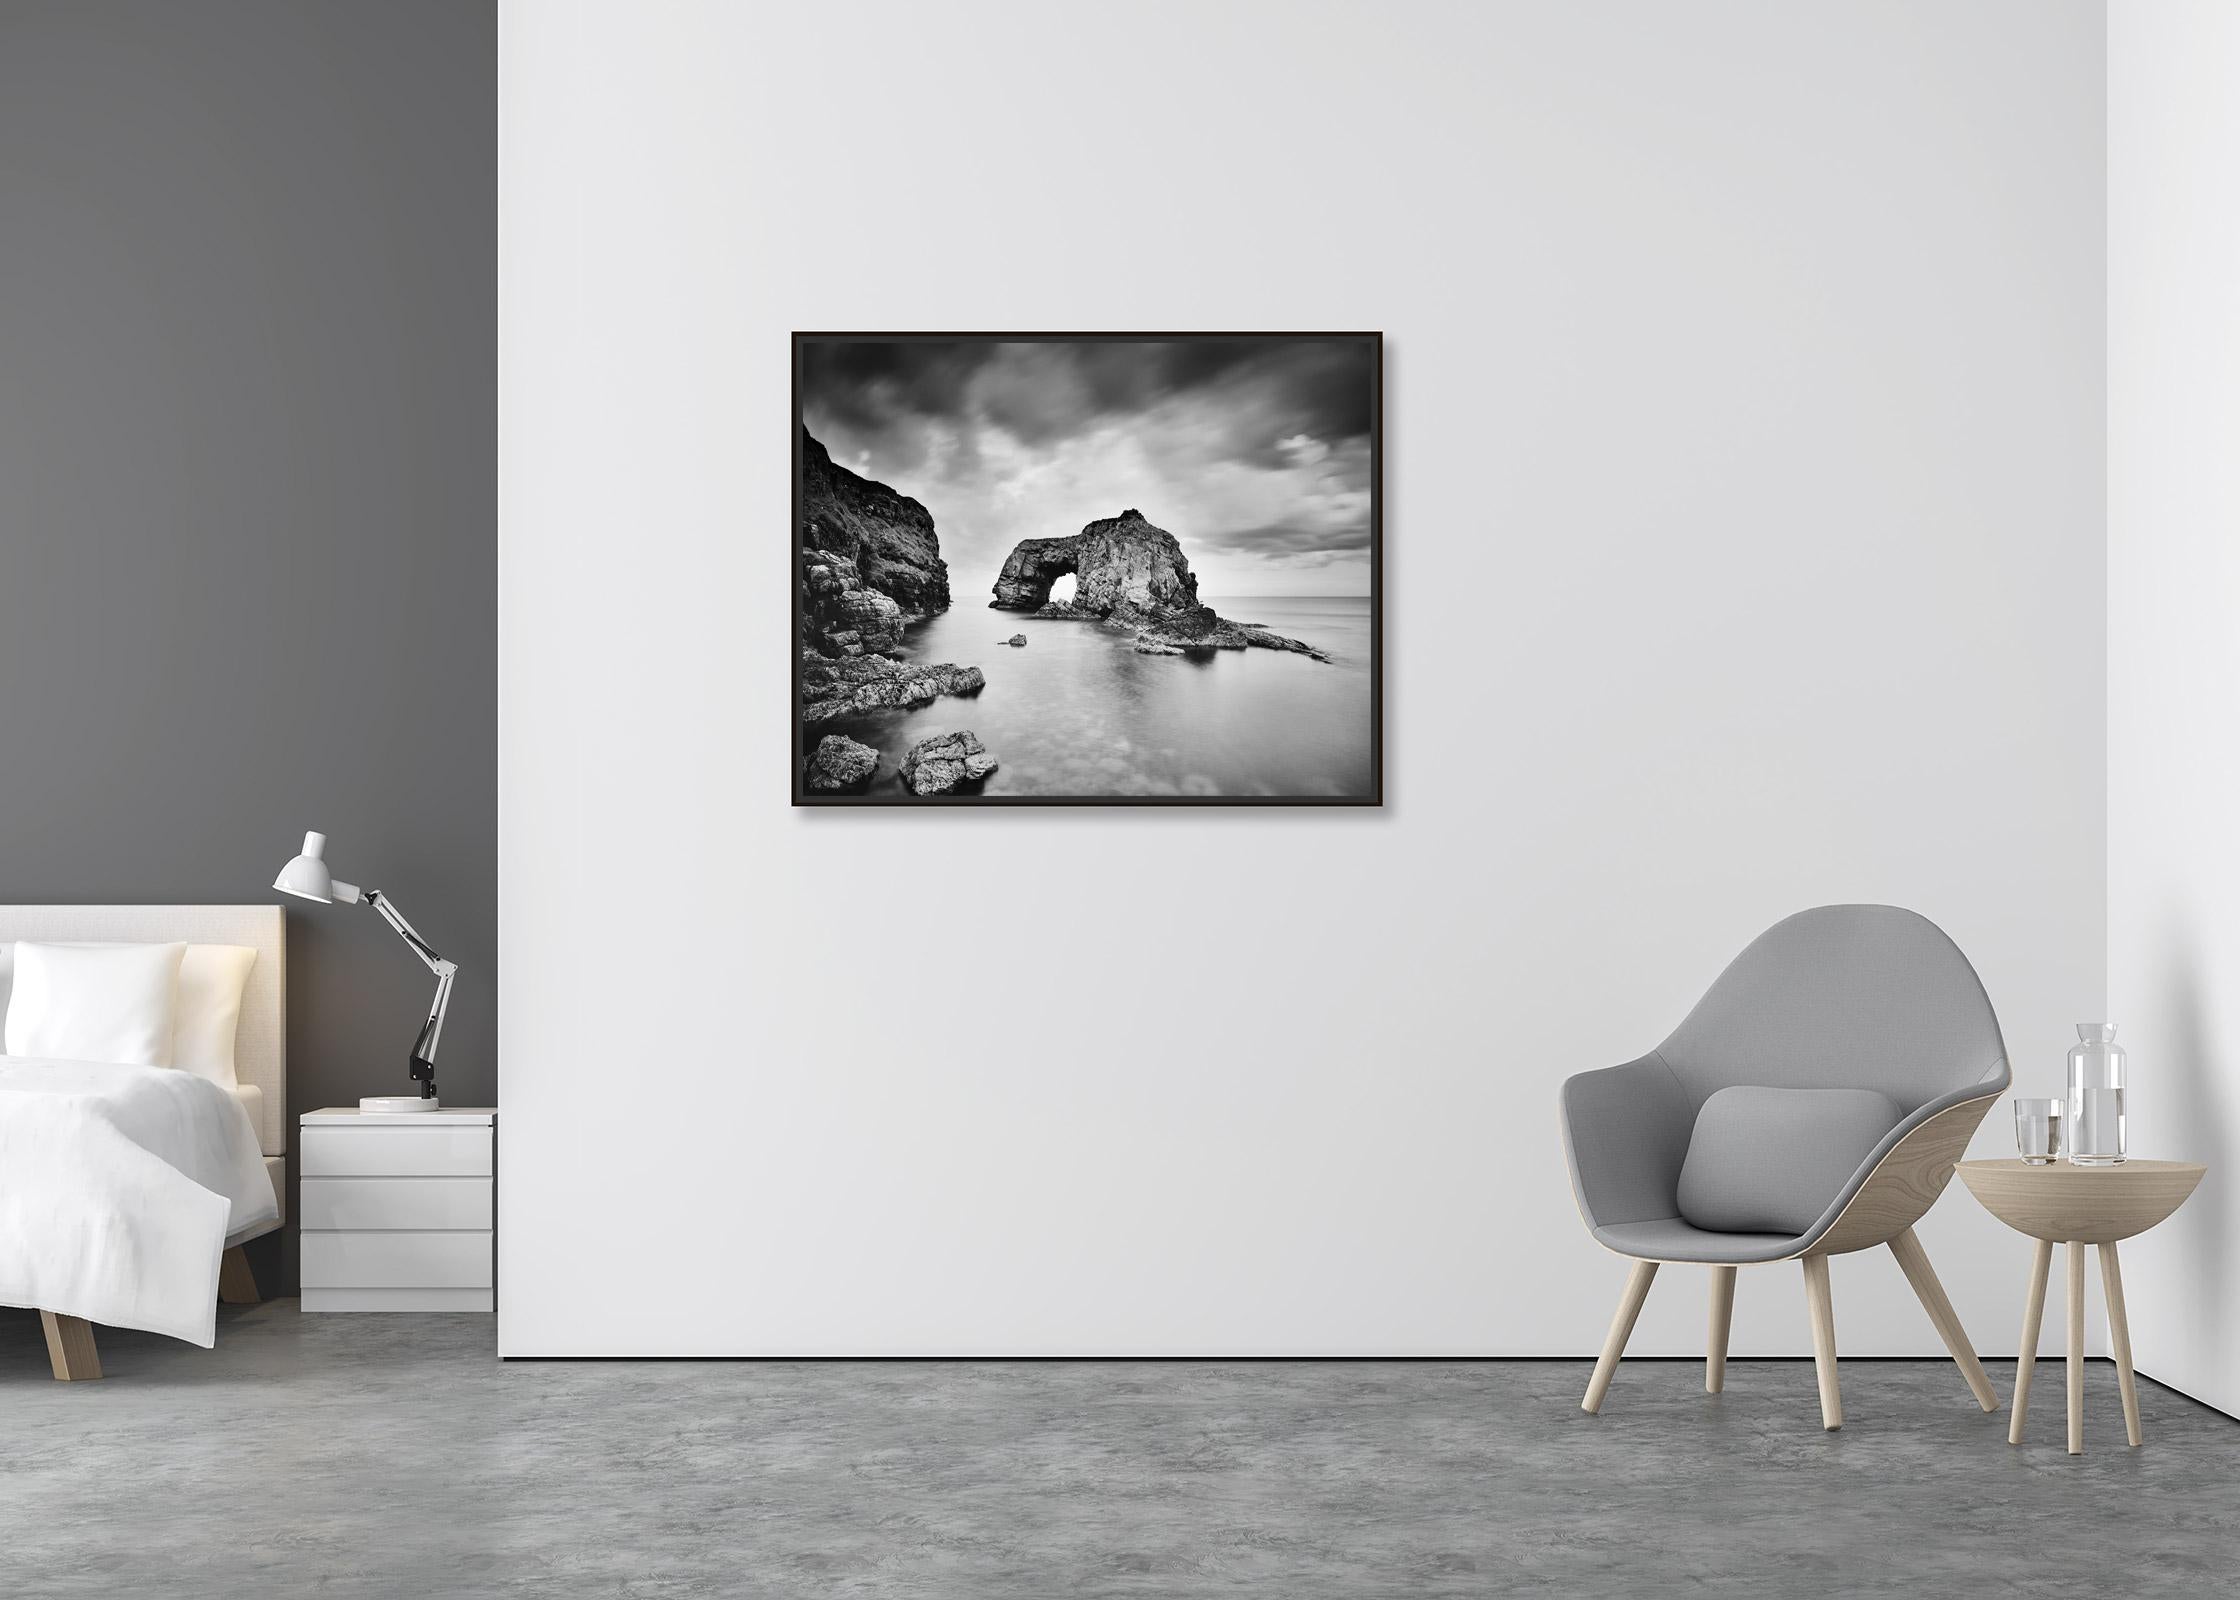 Great Pollet Sea Arch, Irland, Schwarz-Weiß-Aquarellfotografie in Schwarz-Weiß  (Zeitgenössisch), Photograph, von Gerald Berghammer